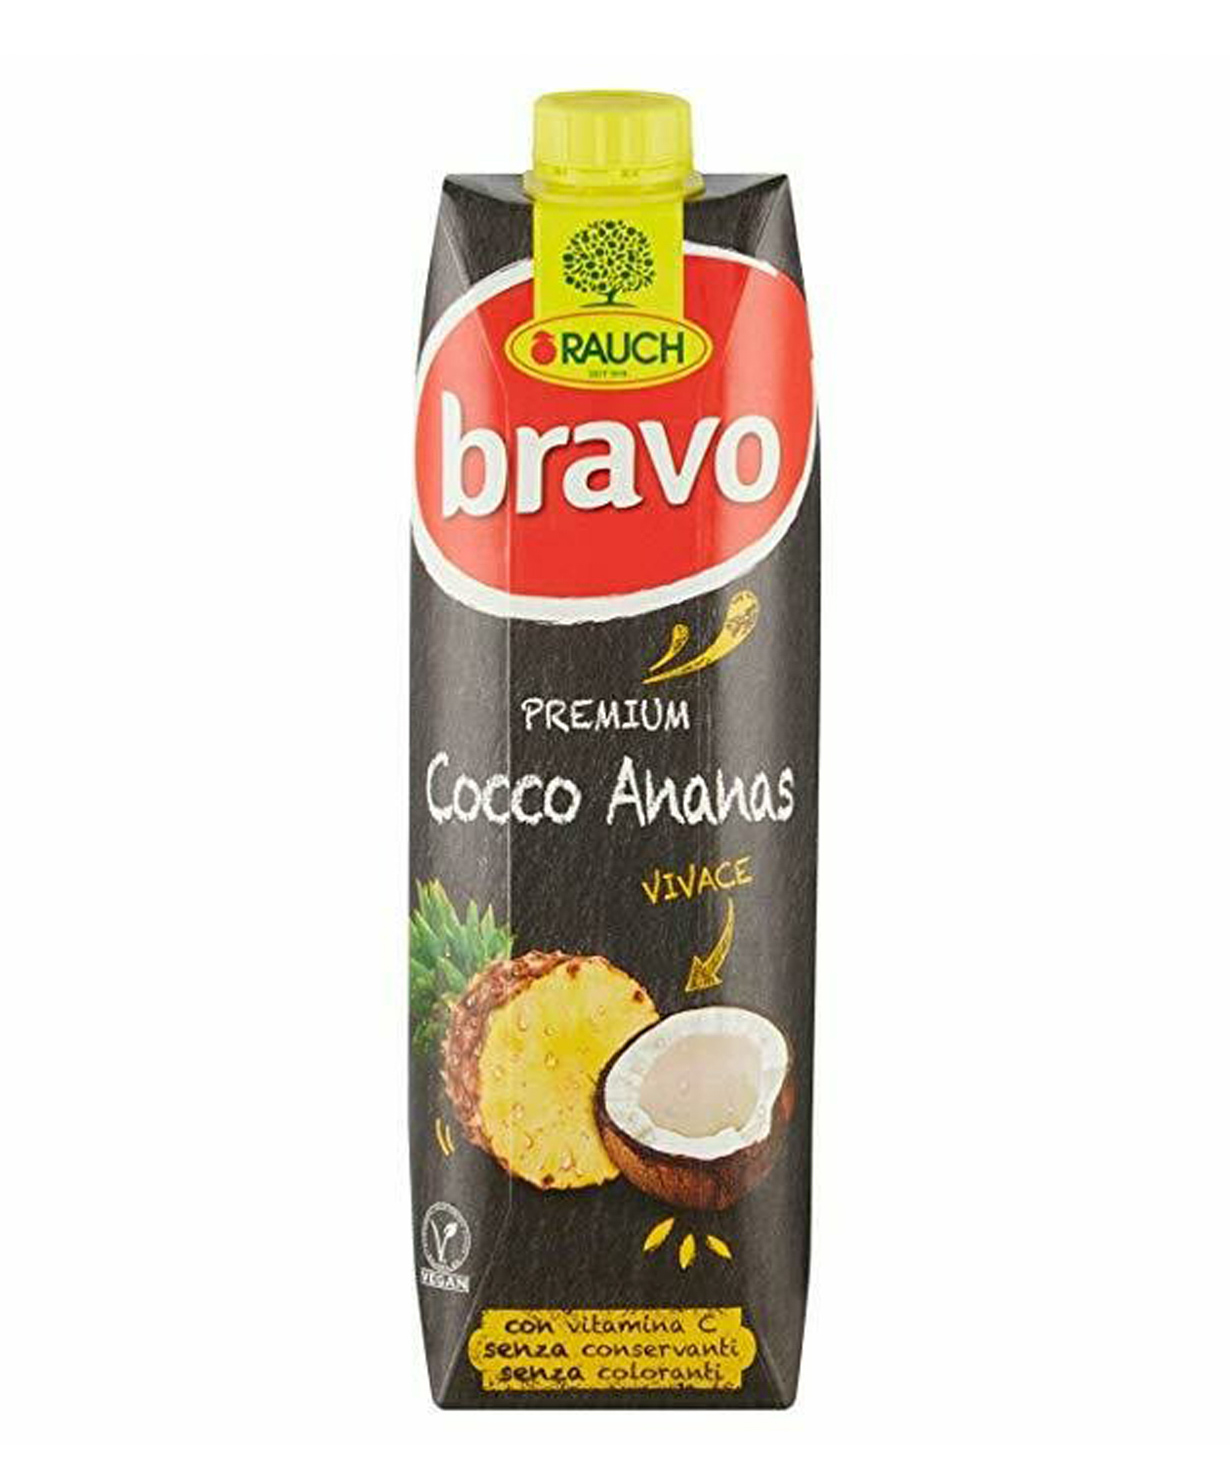 Հյութ «Bravo» բնական, արքայախնձոր և կոկոս 1լ